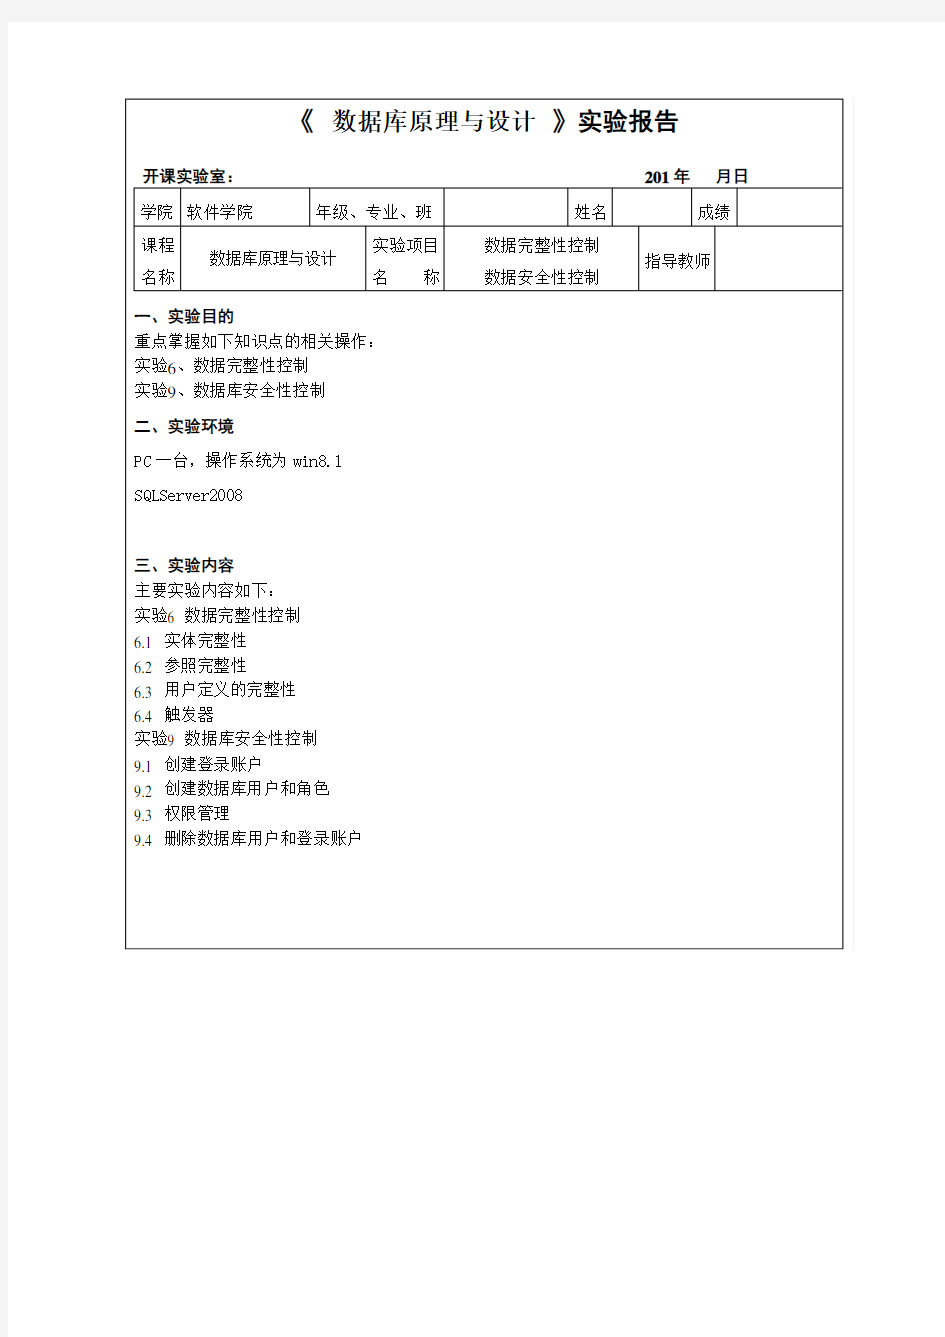 重庆大学数据完整性控制第四次实验讲述